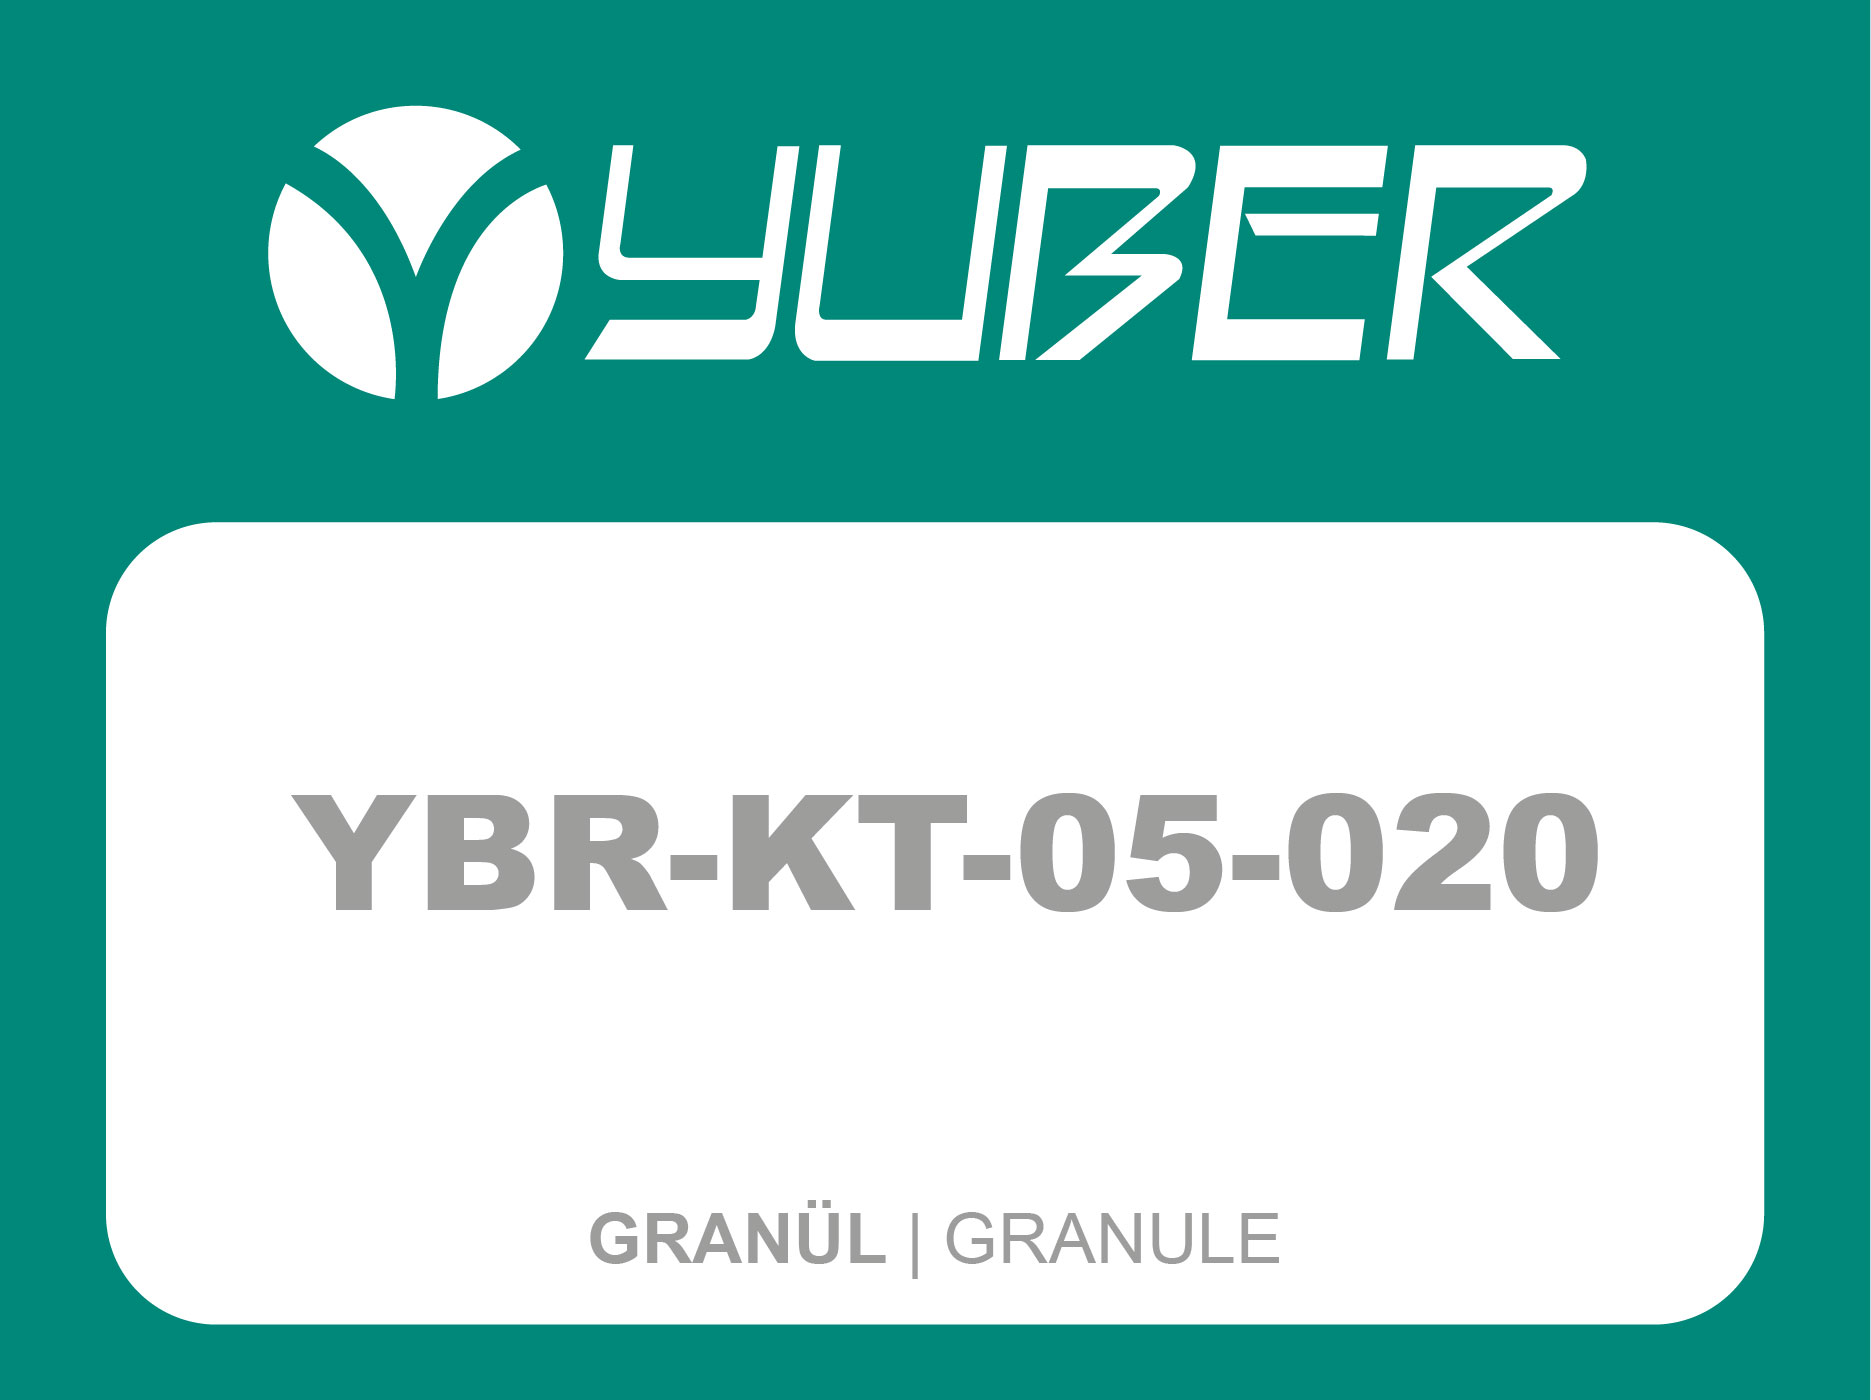 YBR KT 05 020 Granül Yuber Metalurji